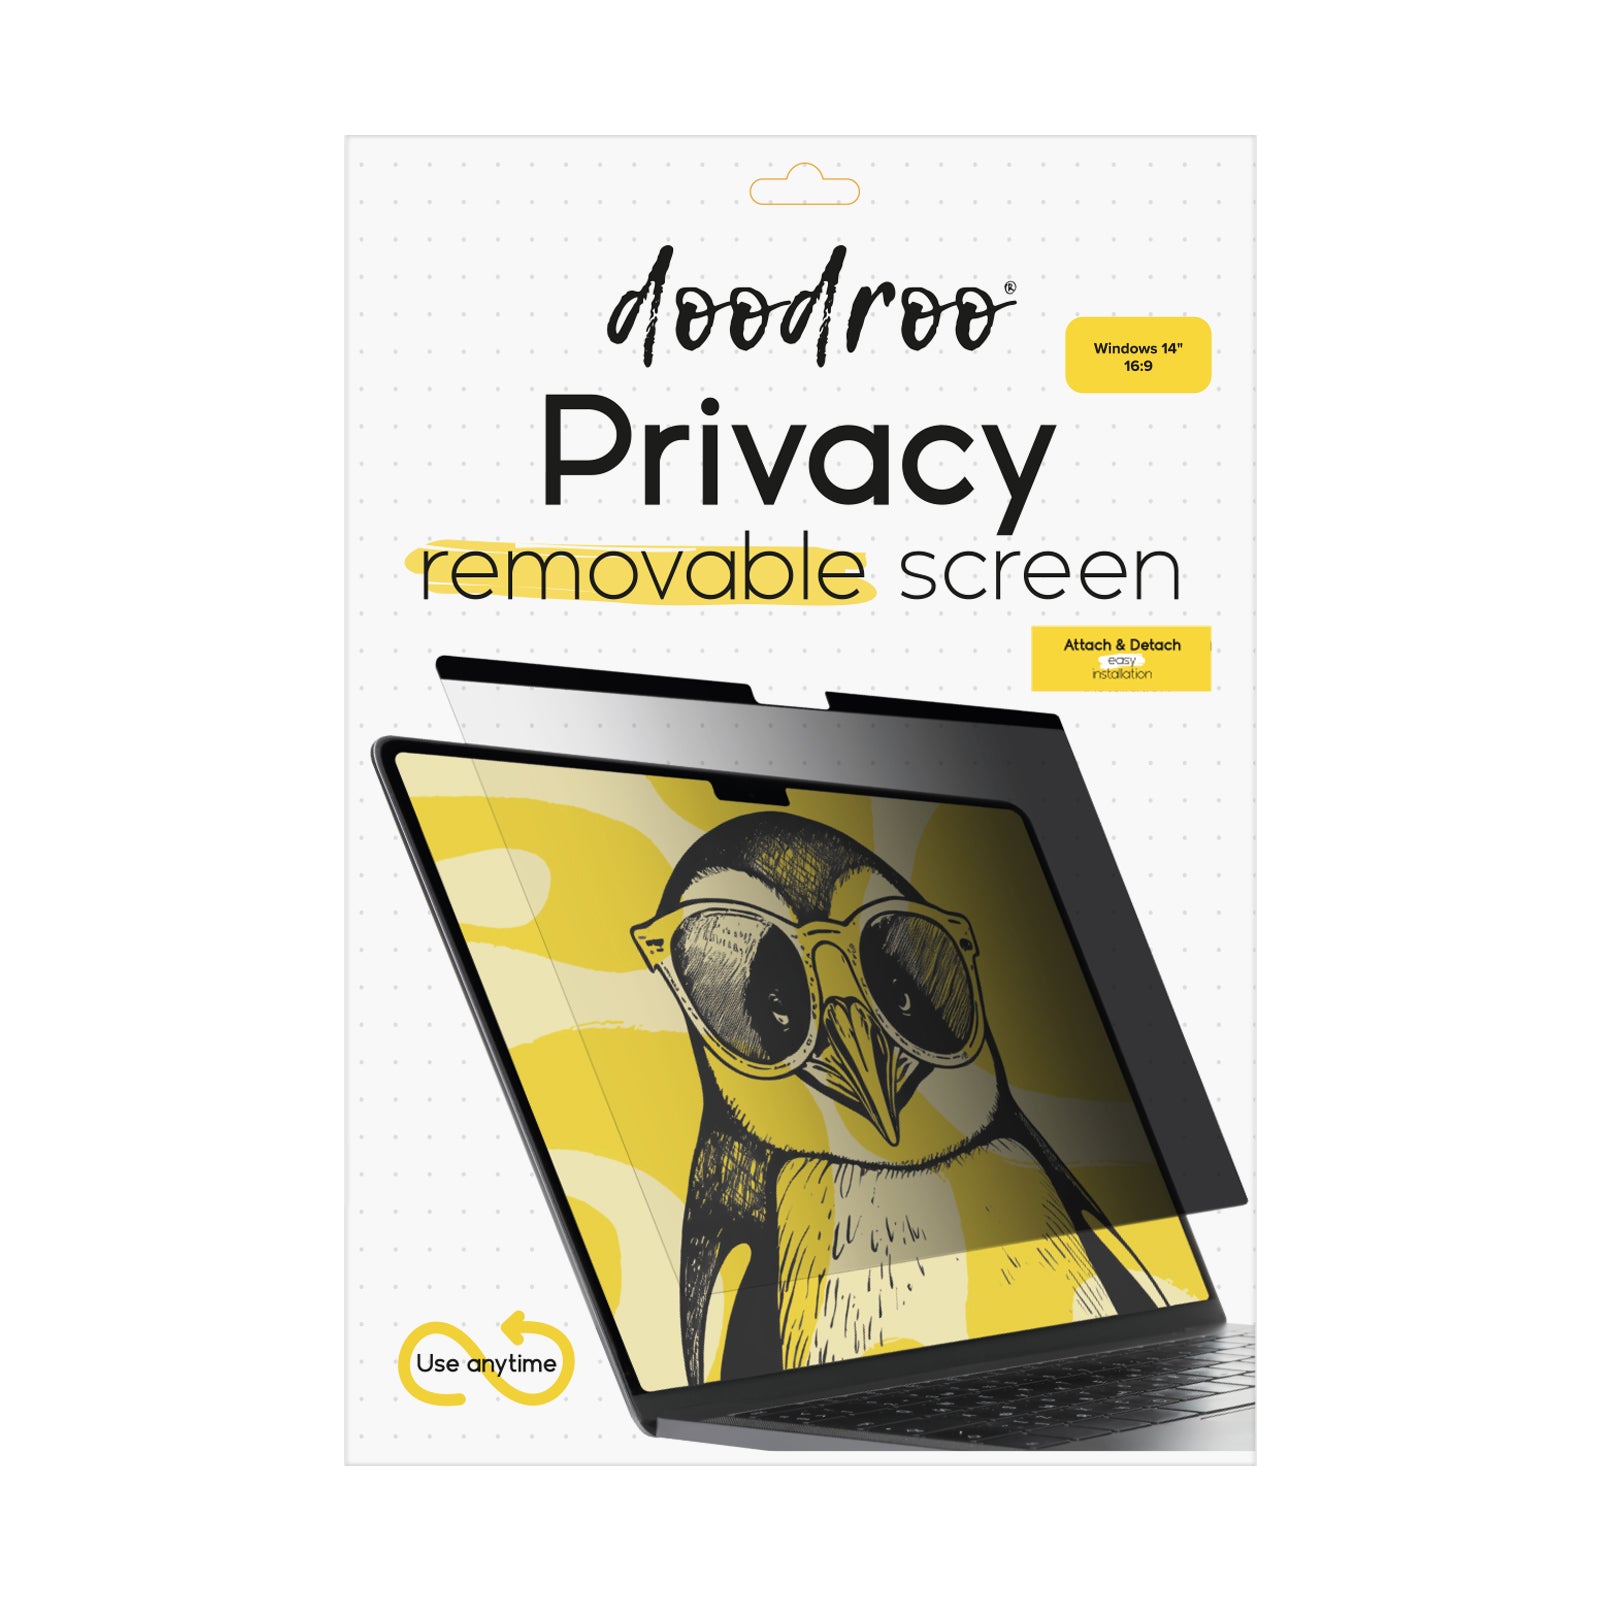 Filtre protecteur de confidentialité, amovible, pour Windows 14" 16:9